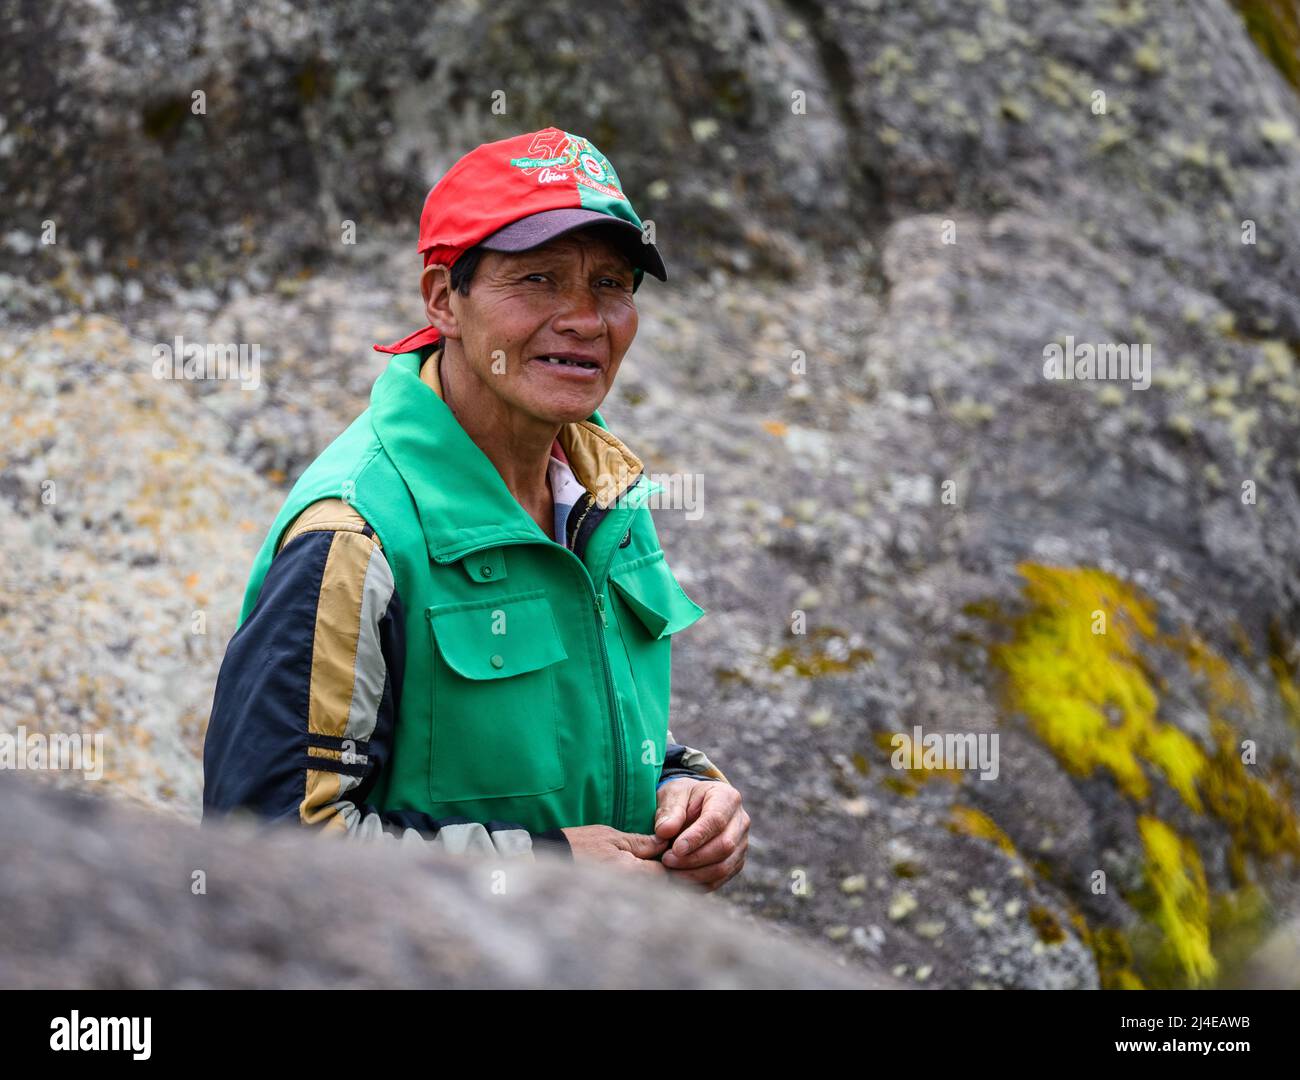 Un homme indigène sert de guide dans les Andes reculées. Colombie, Amérique du Sud. Banque D'Images